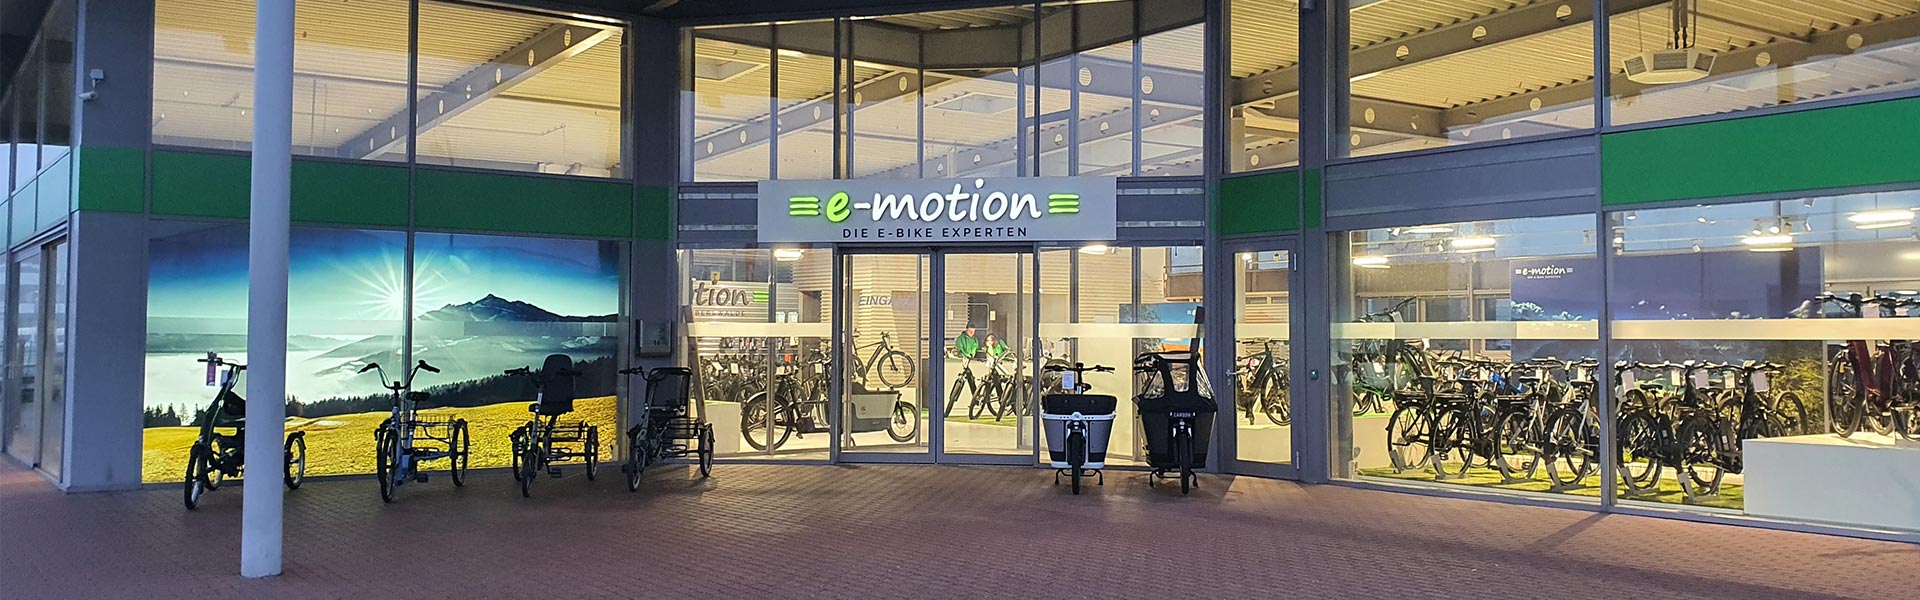 e-motion e-Bike Welt von außen